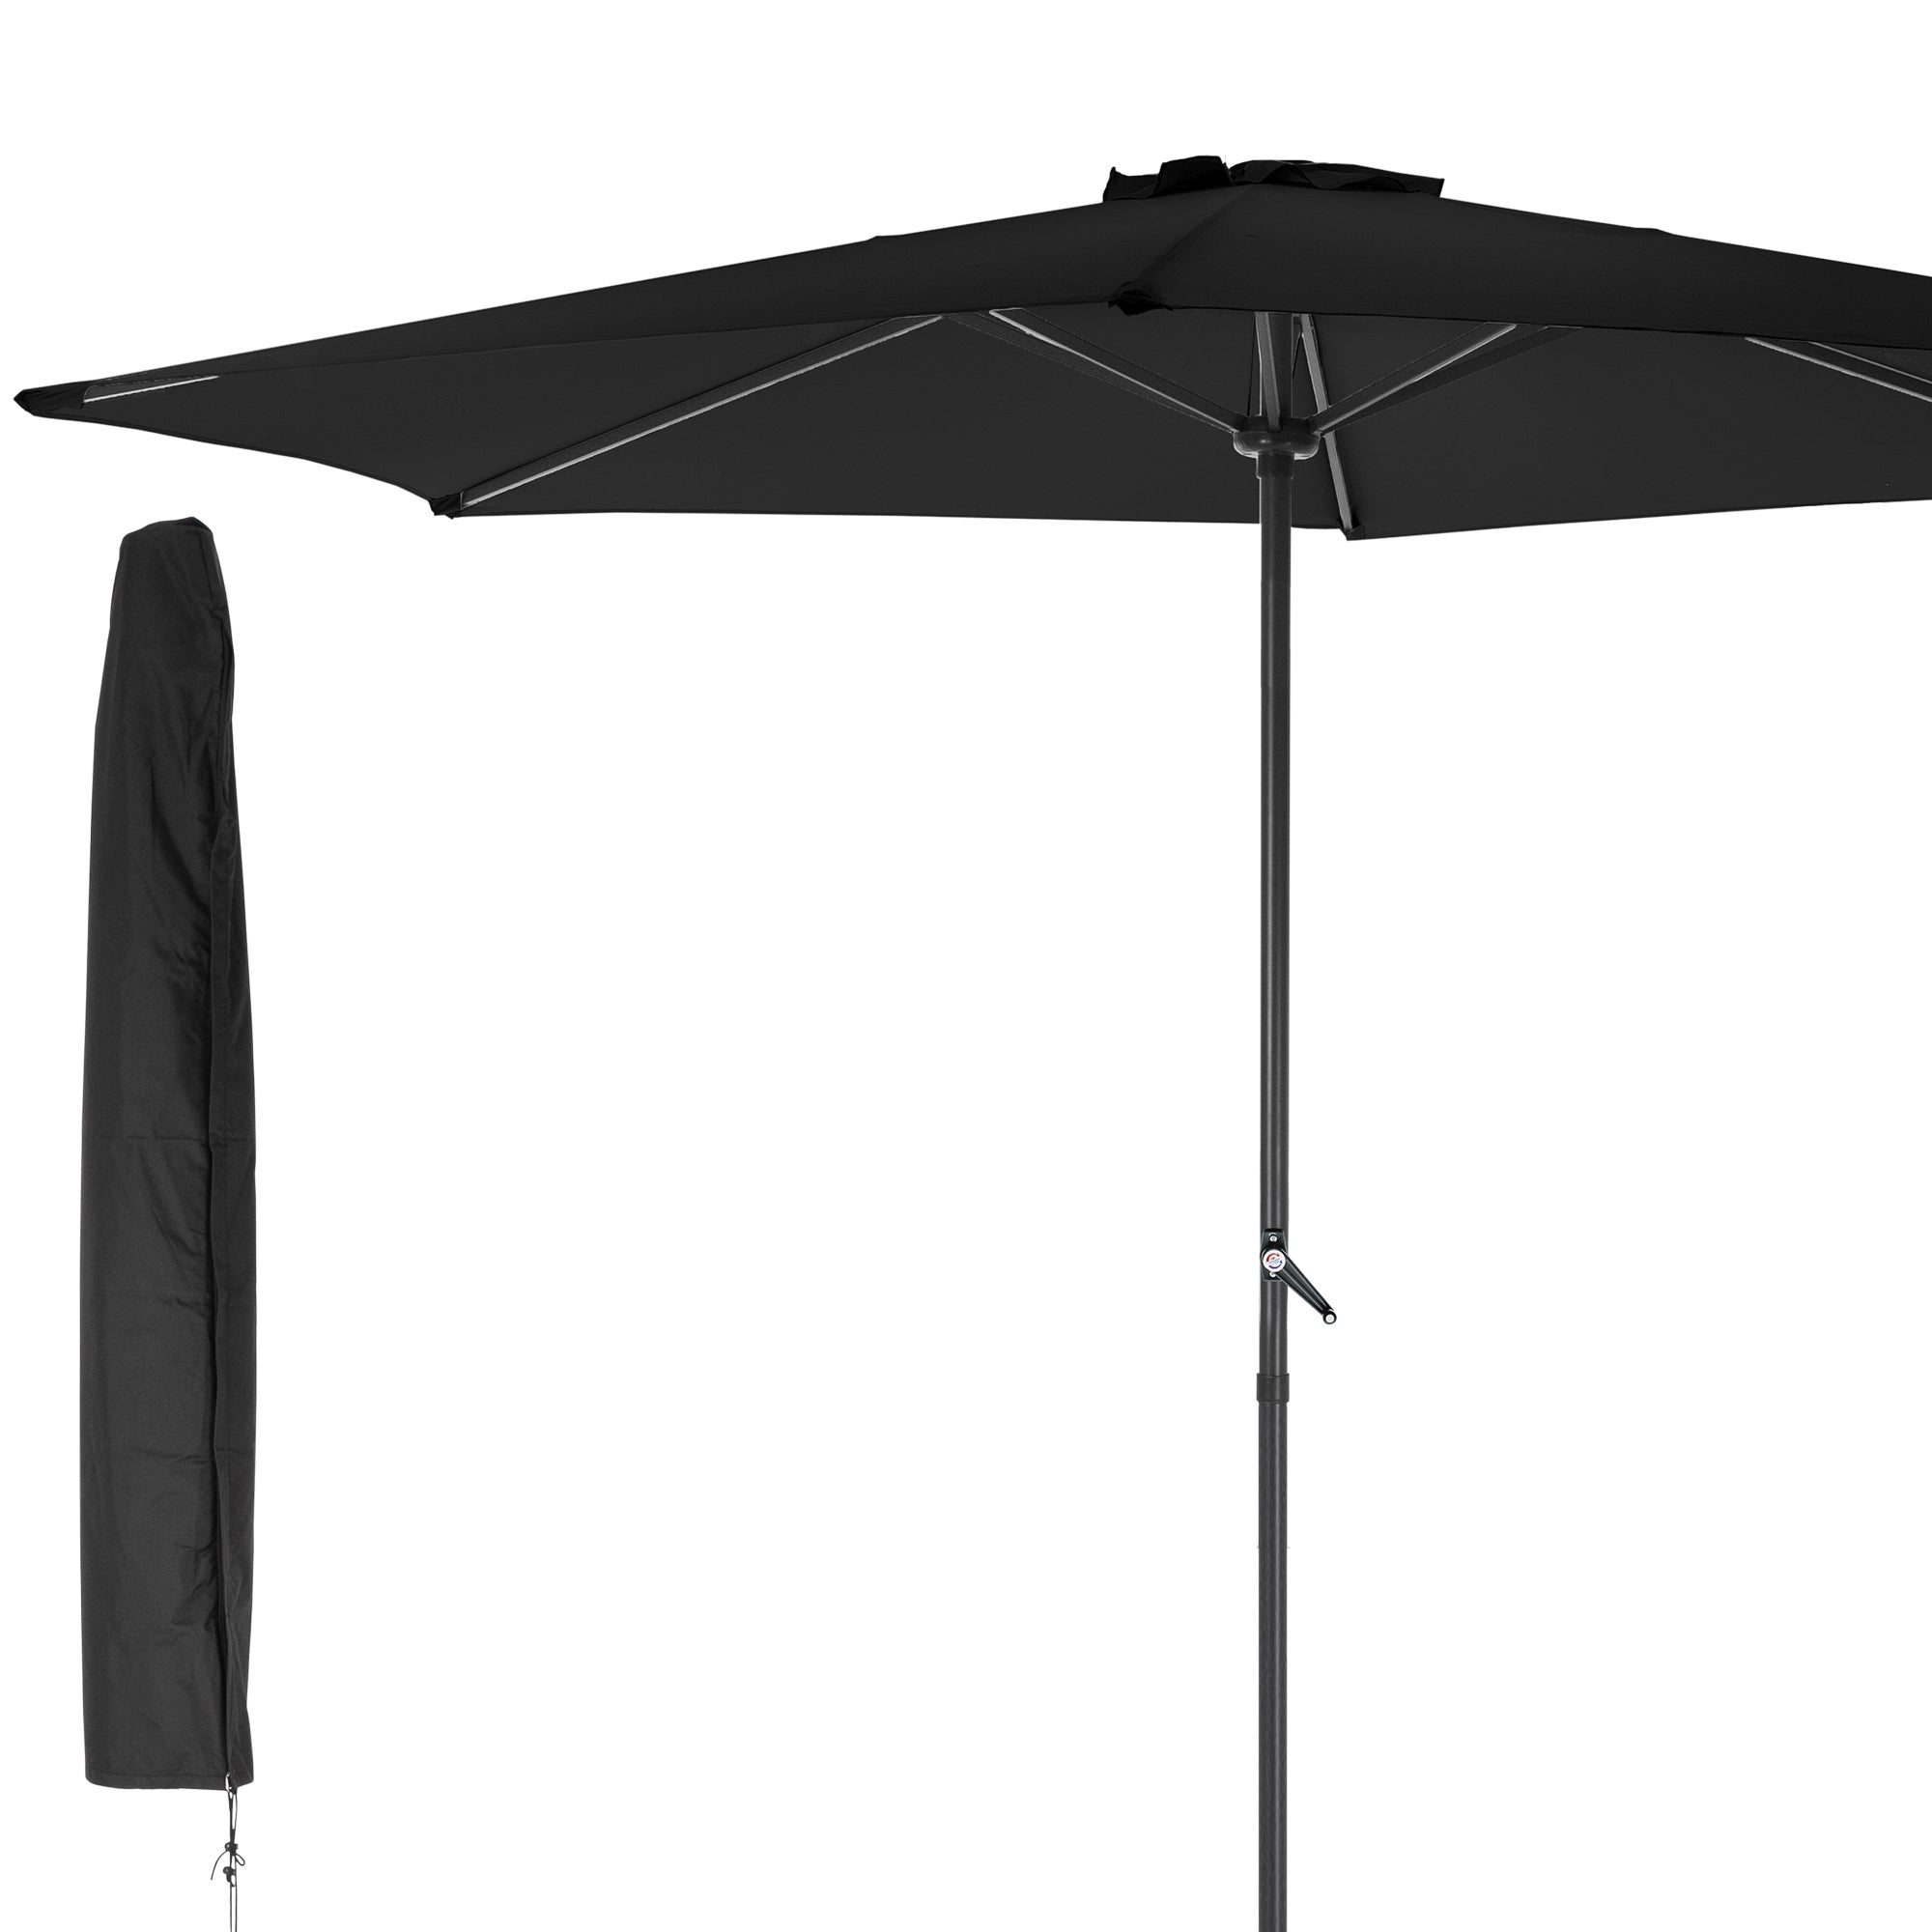 Имя зонтик. Зонт садовый 2.7 м (dx21006). Туристический стол с зонтом. Уличные складные зонты от солнца. Каркас зонта.